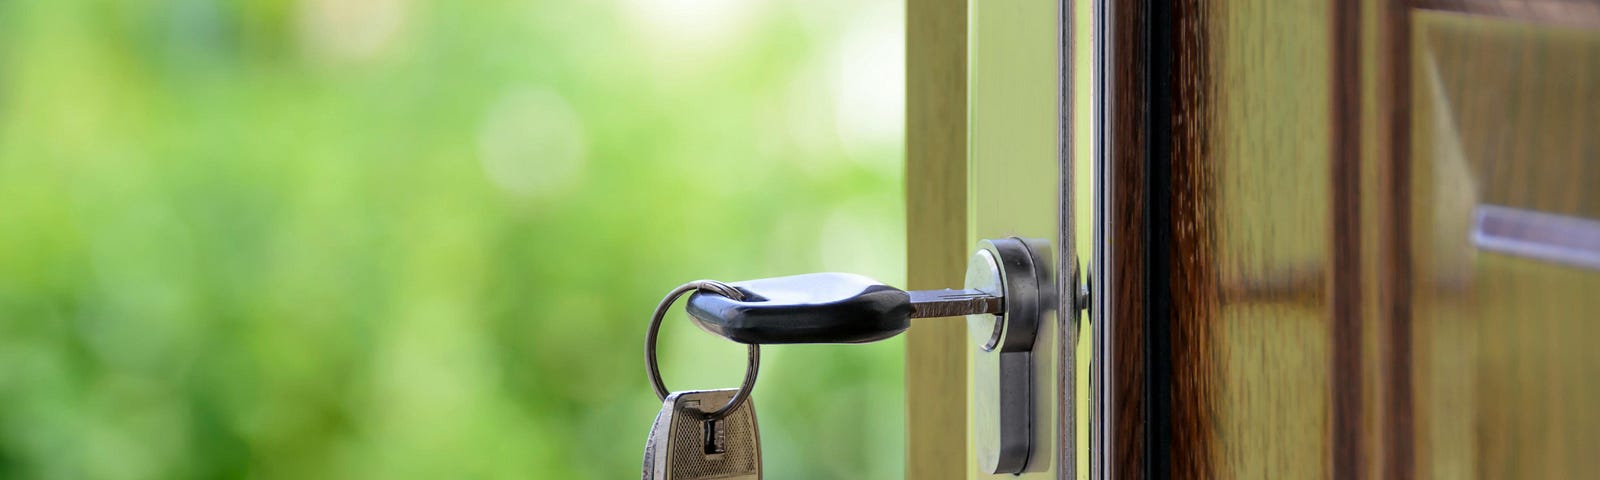 Brown wooden door standing open with silver key in lock.